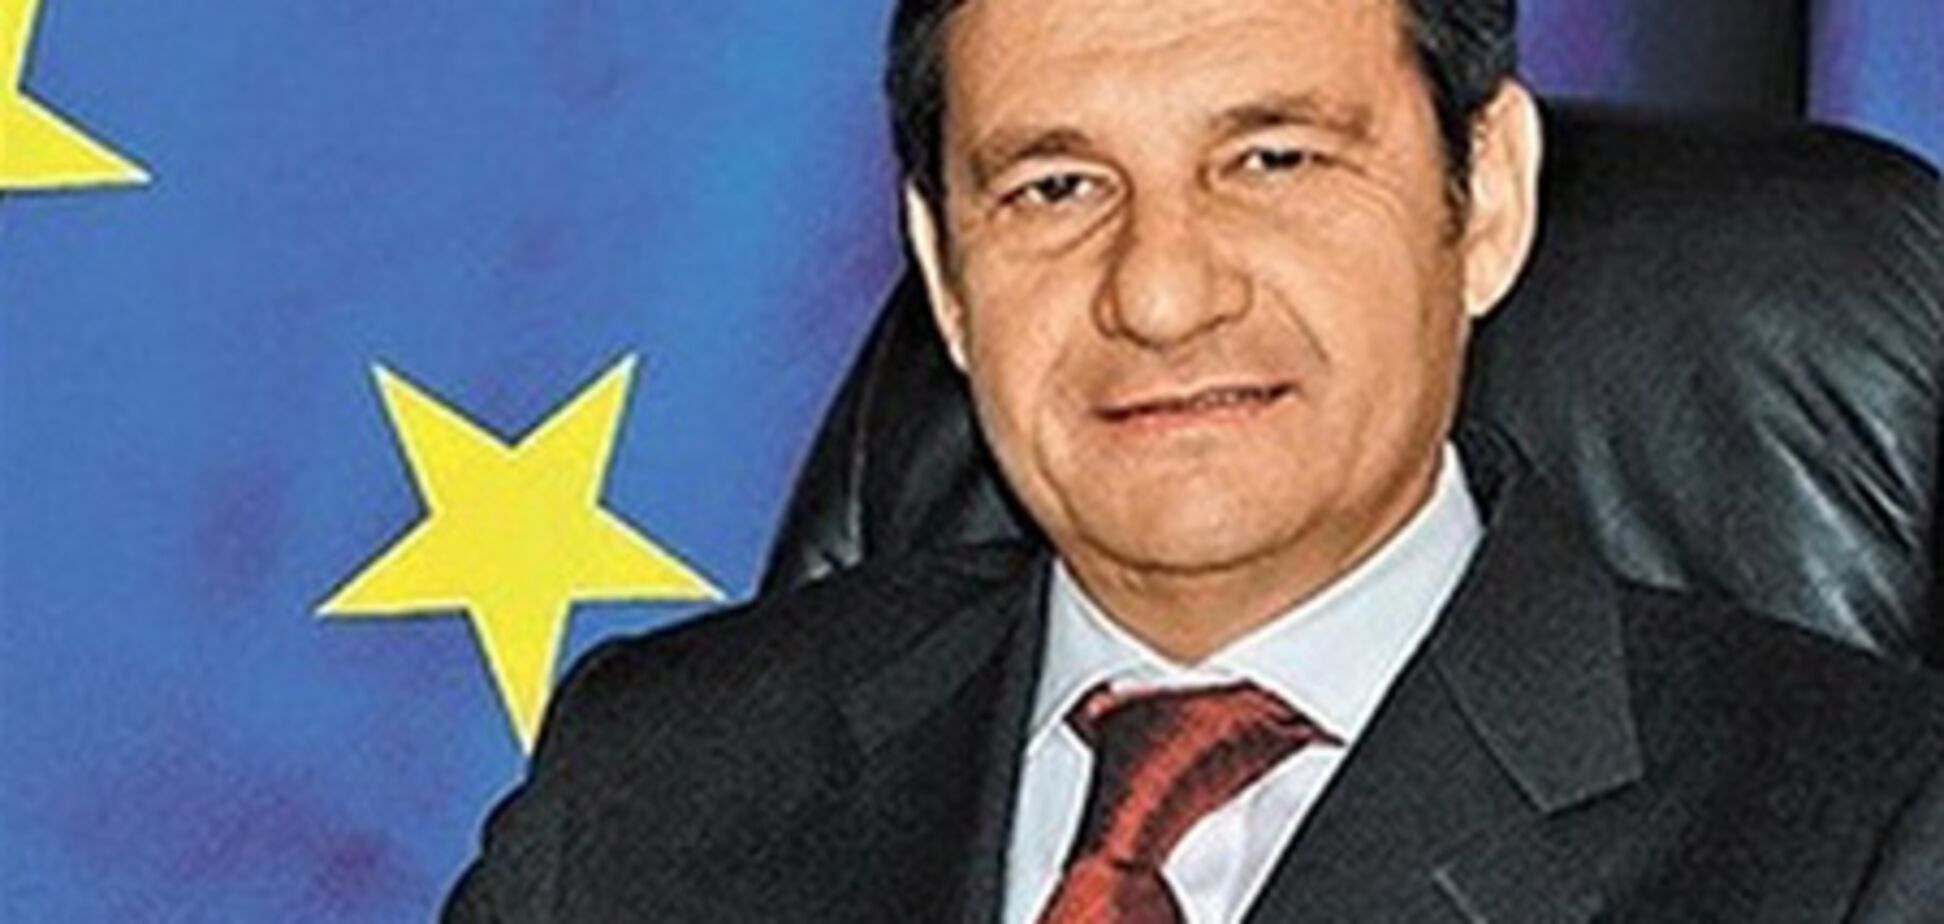 ЕС и Всемирный банк больше Украине не помогут